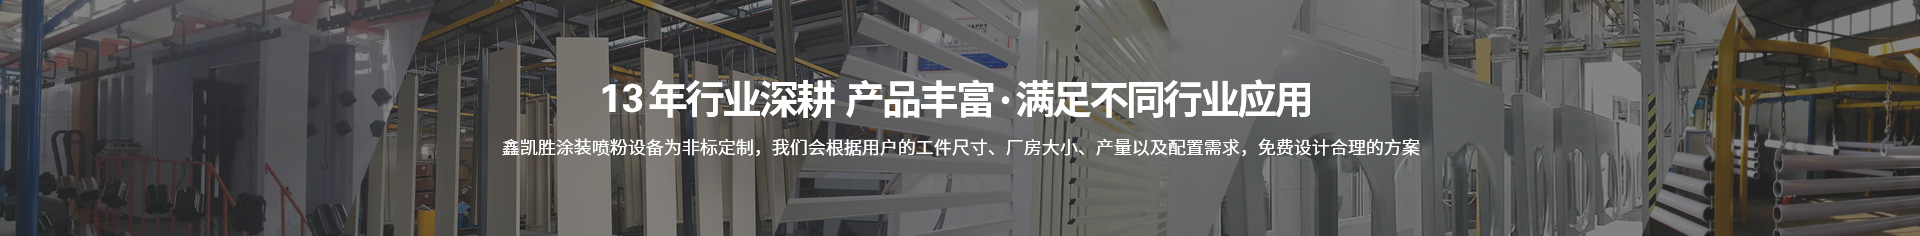 深圳市鑫凯胜自动化设备制造有限公司